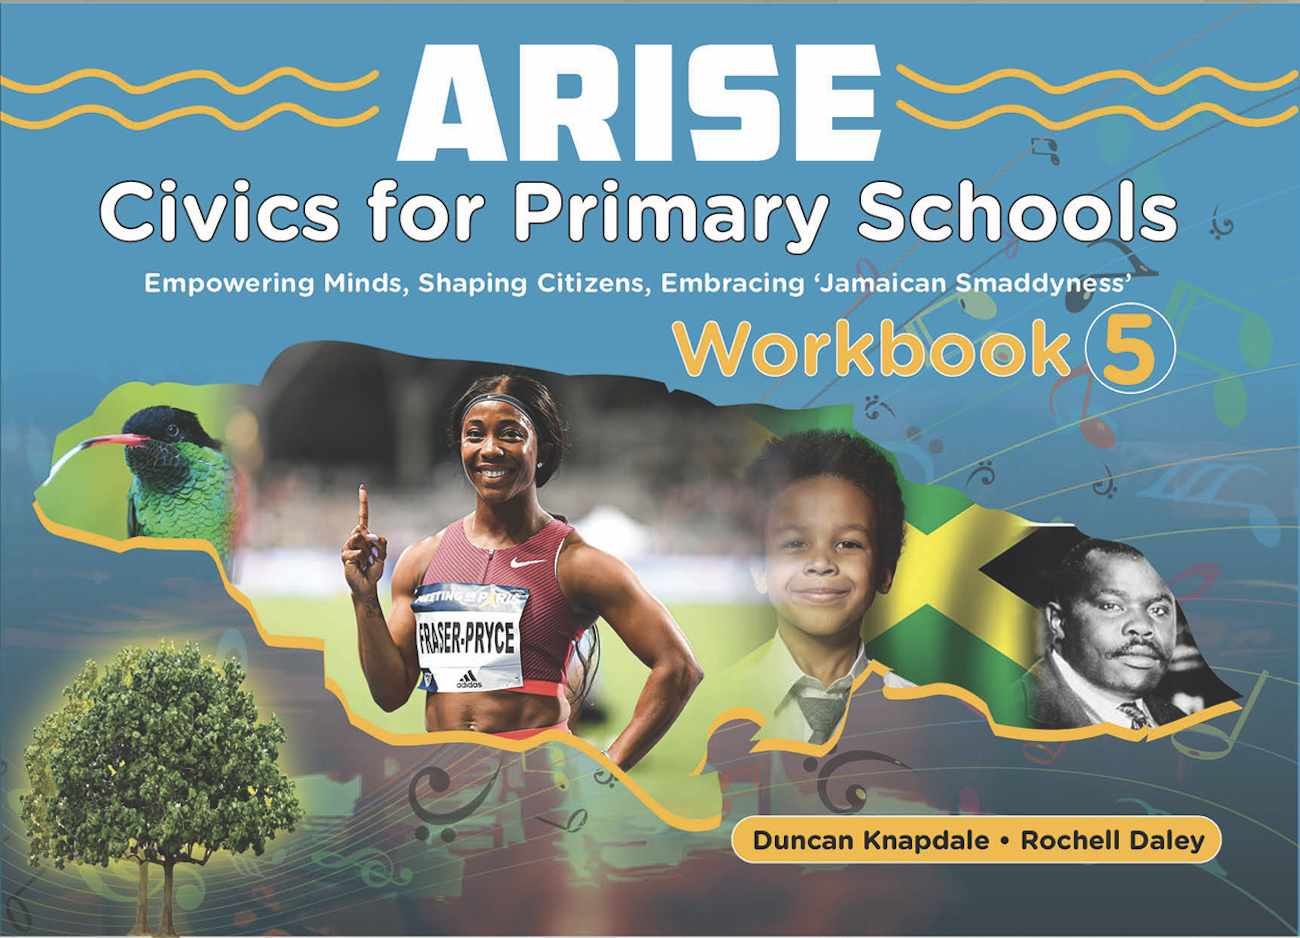 ARISE: Workbook 5